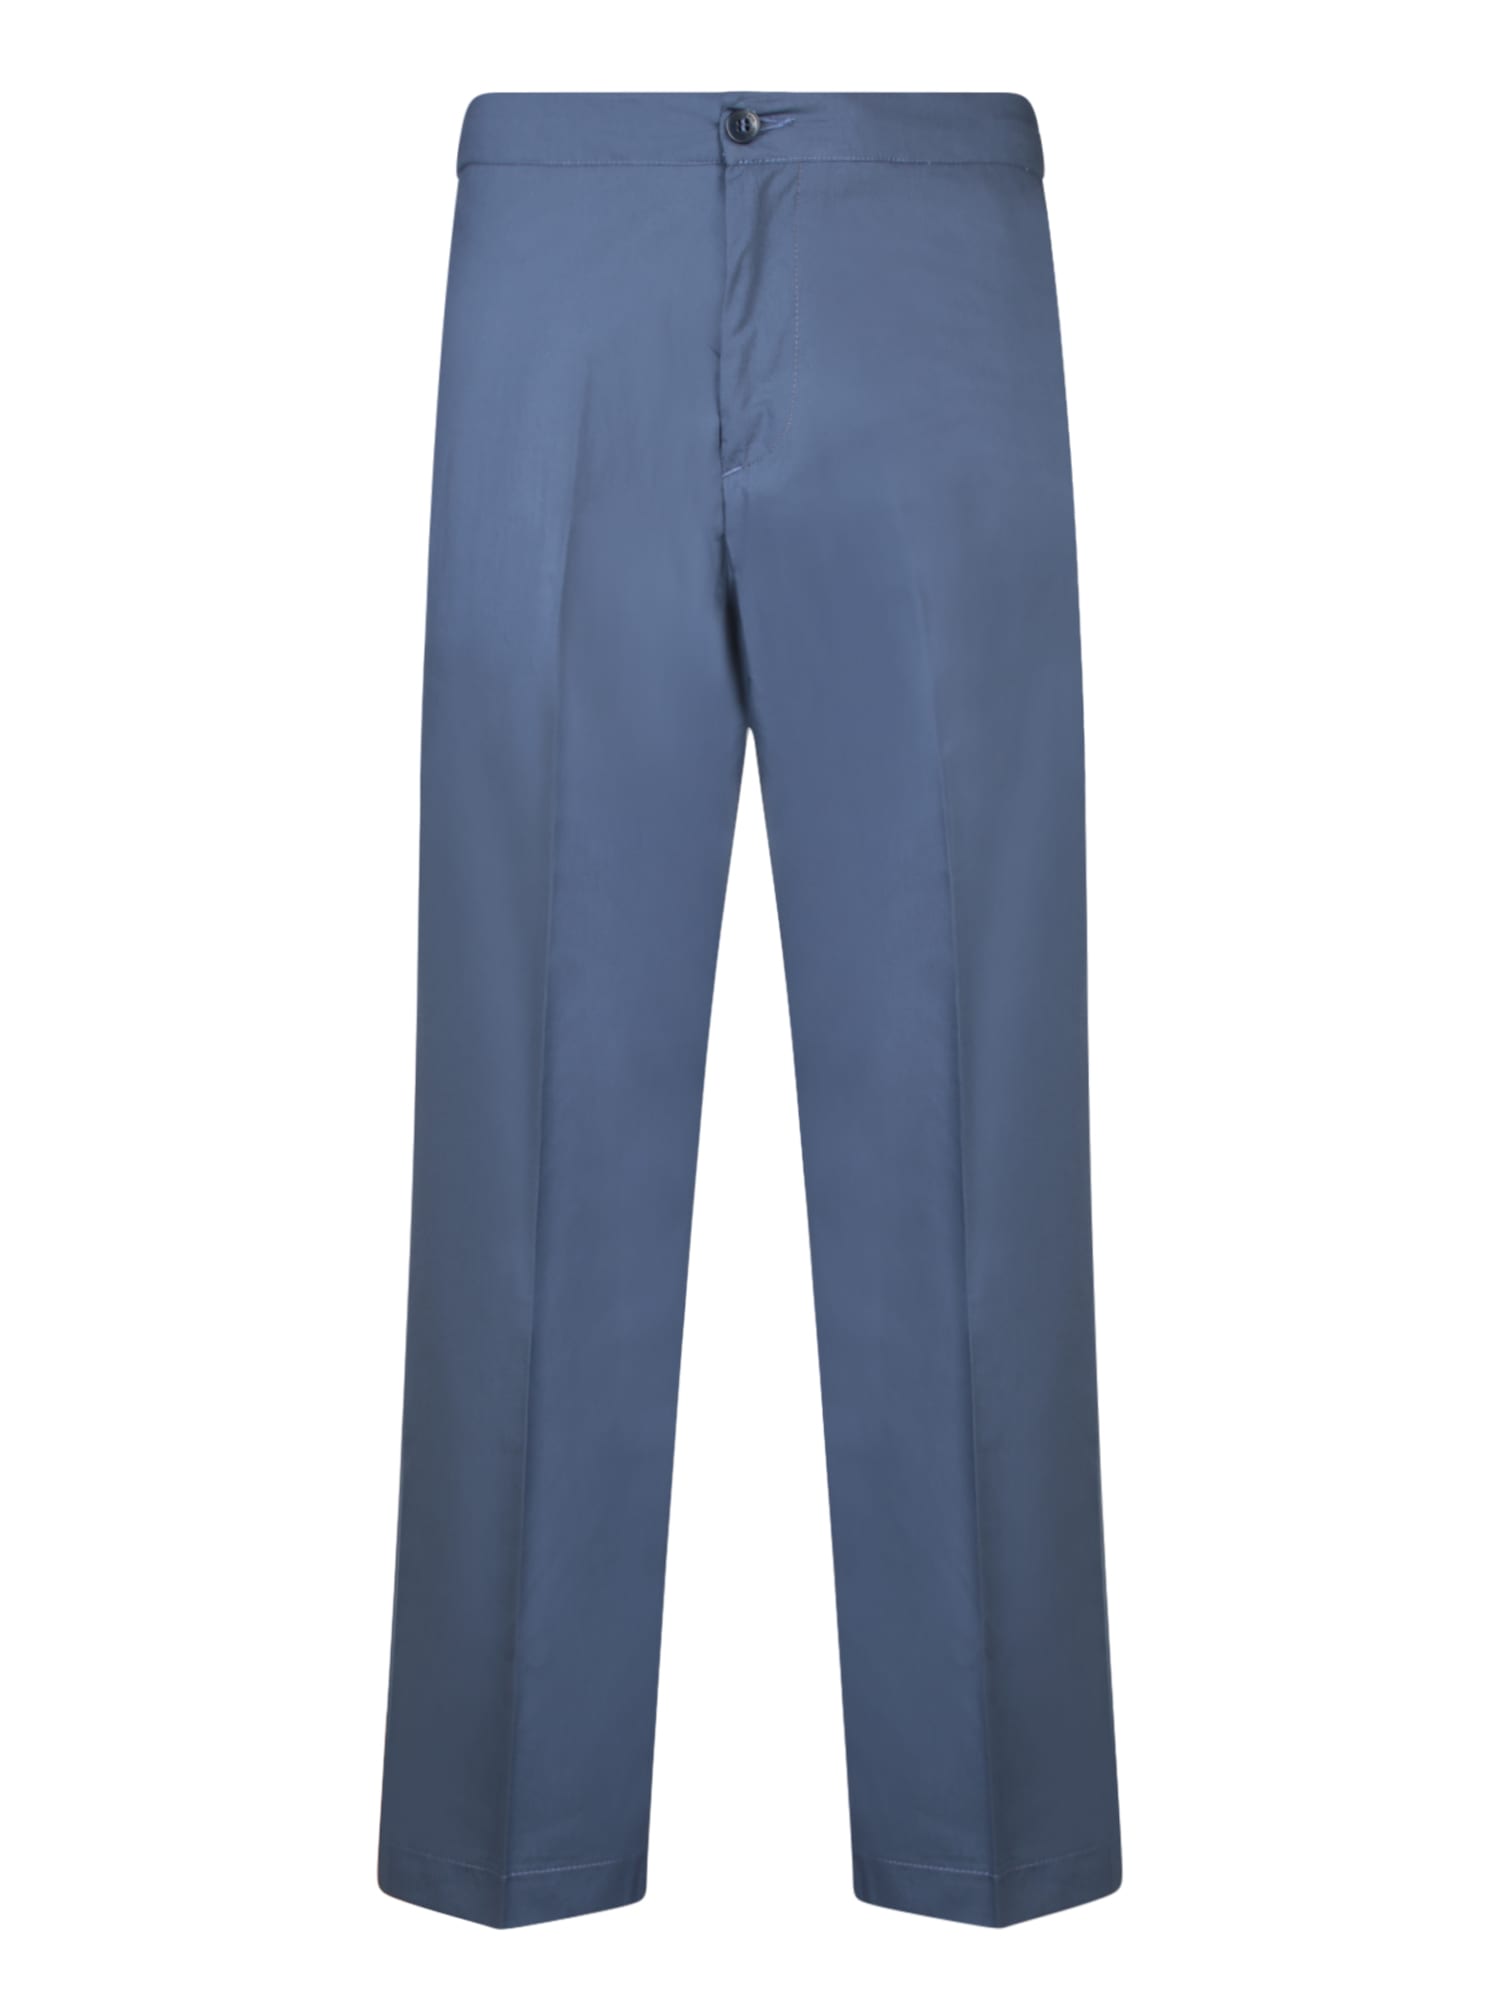 Jean19 Blue Trousers